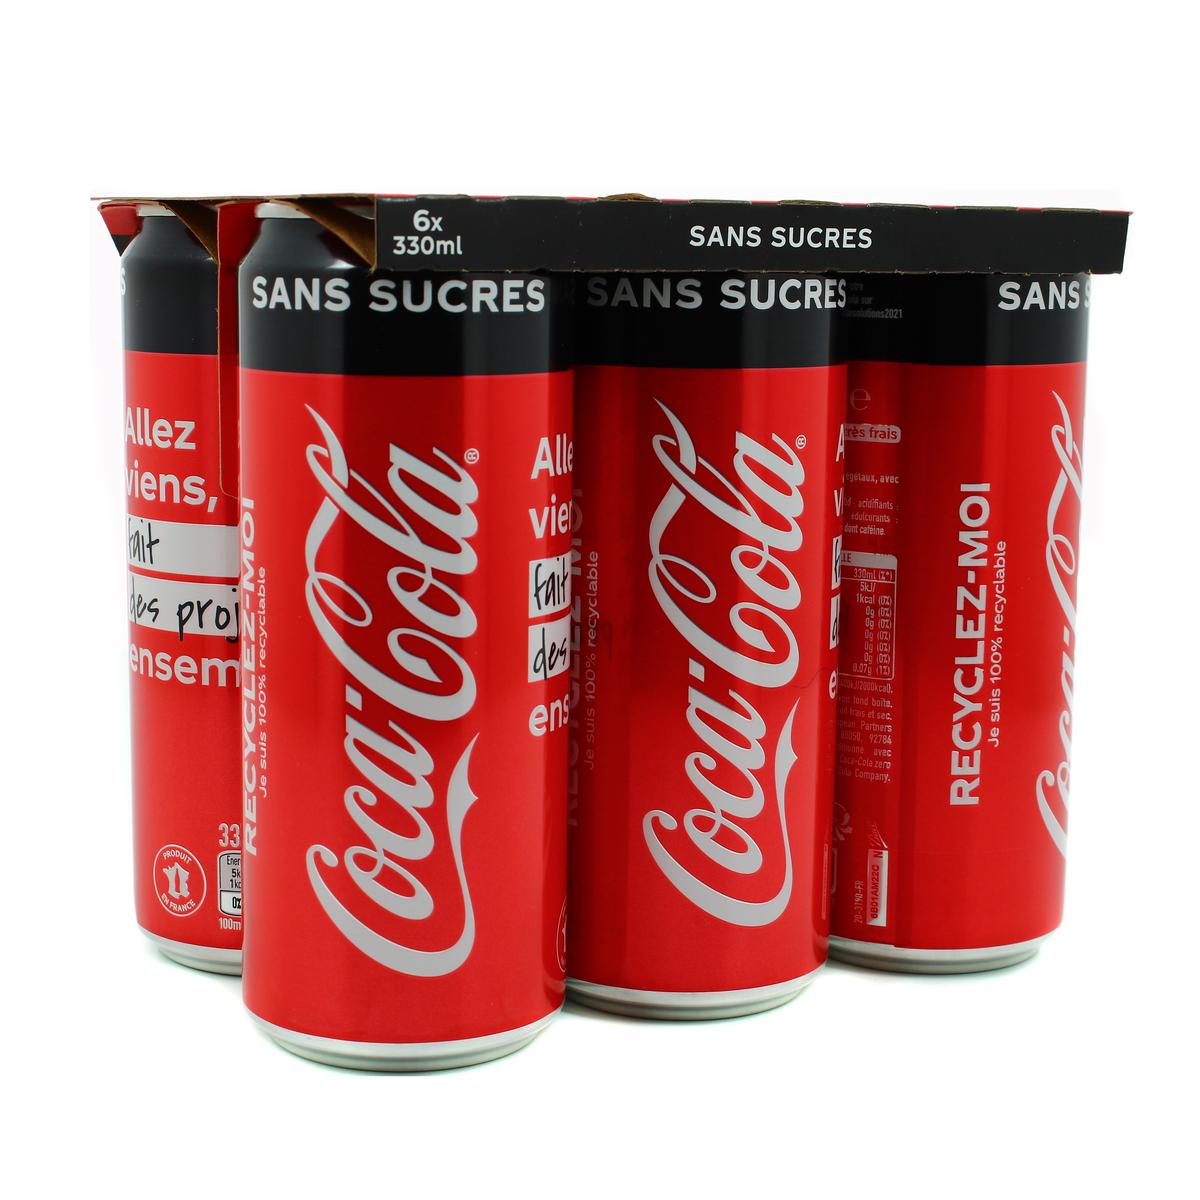 Mini canette de Coca Cola personnalisée